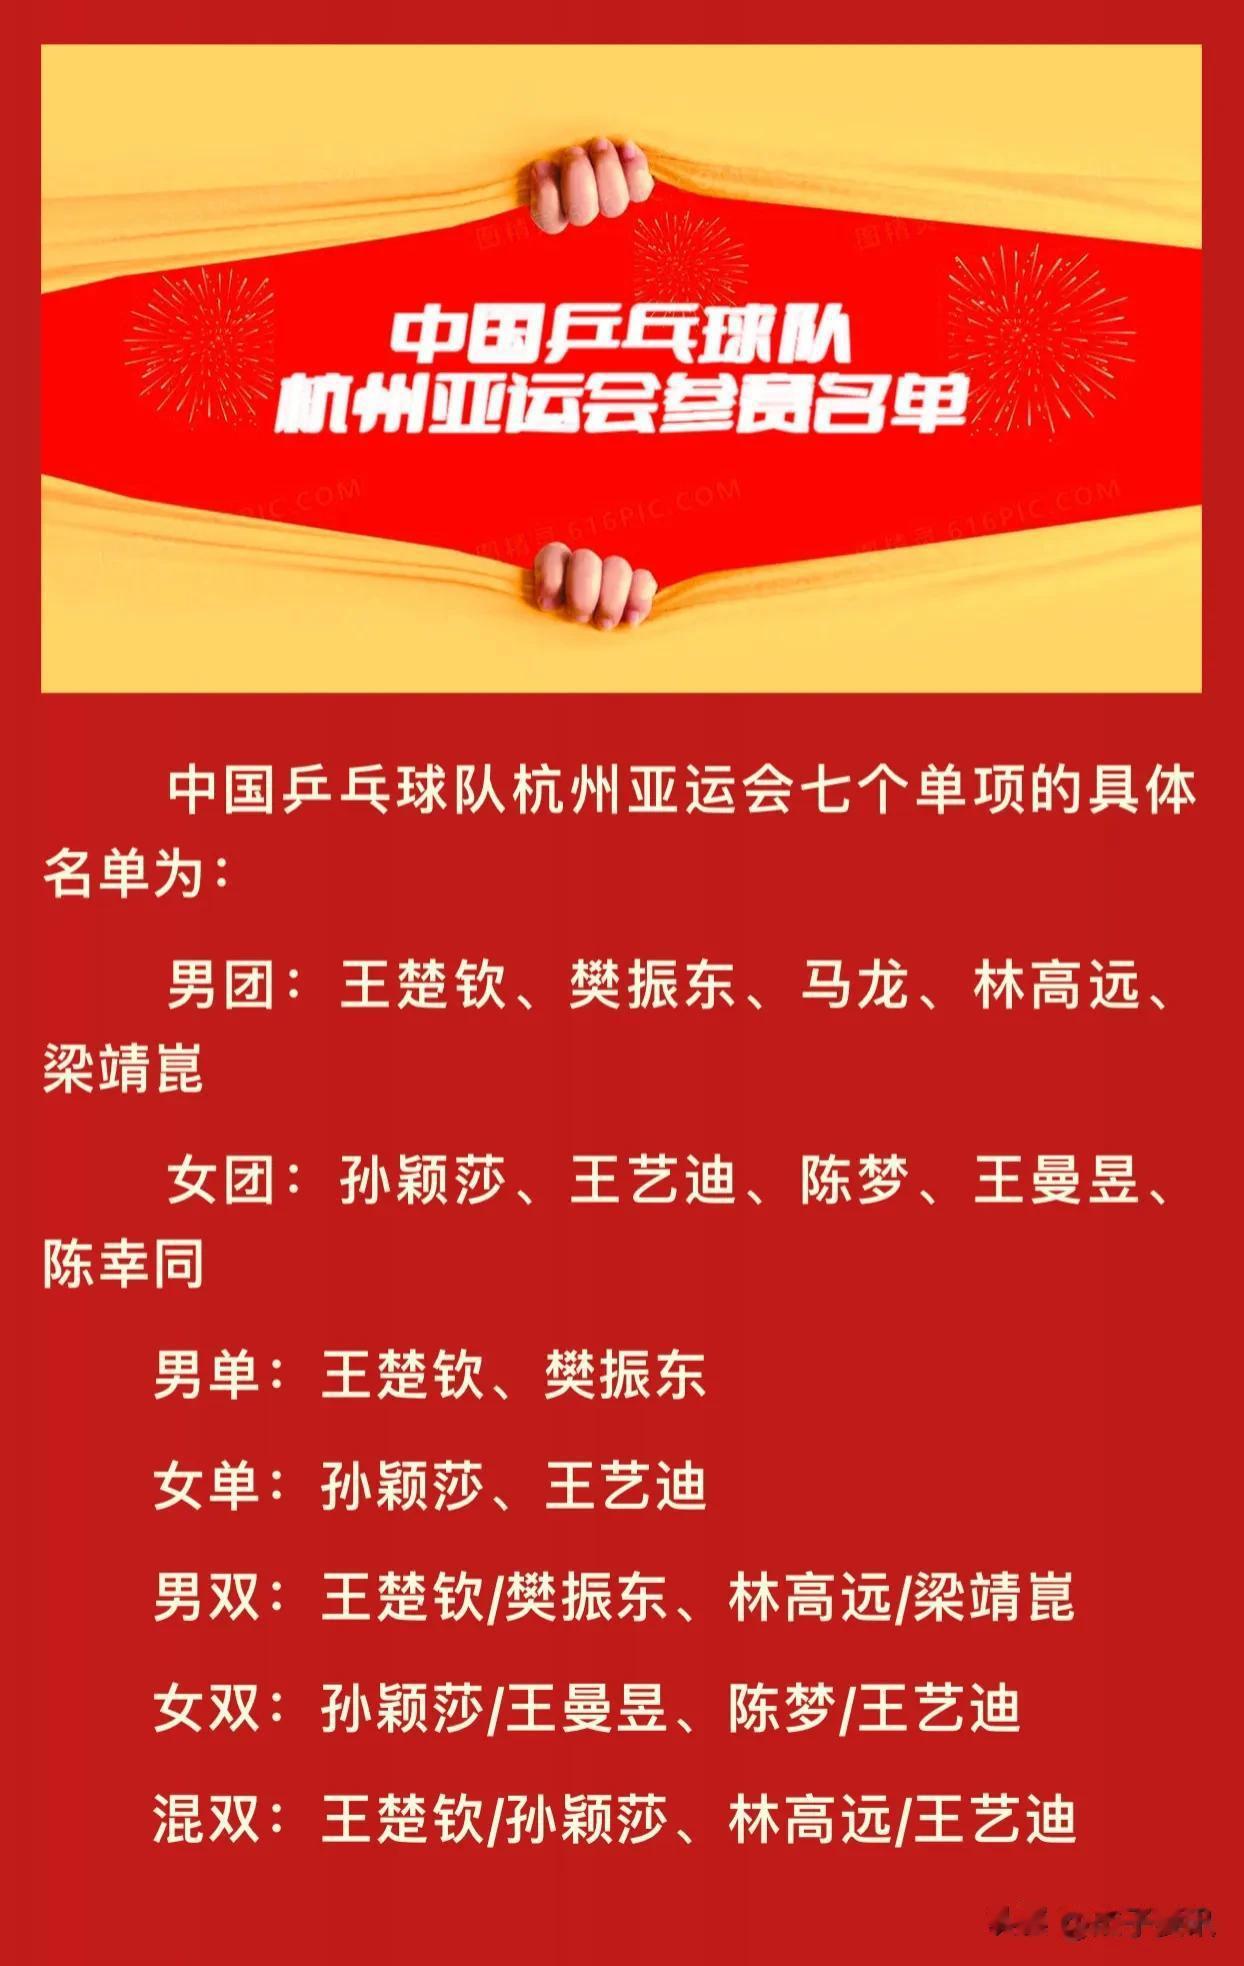 官方：公示中国乒乓球队杭州亚运会参赛名单

昨天，中国乒协在官网公示了中国乒乓球(2)